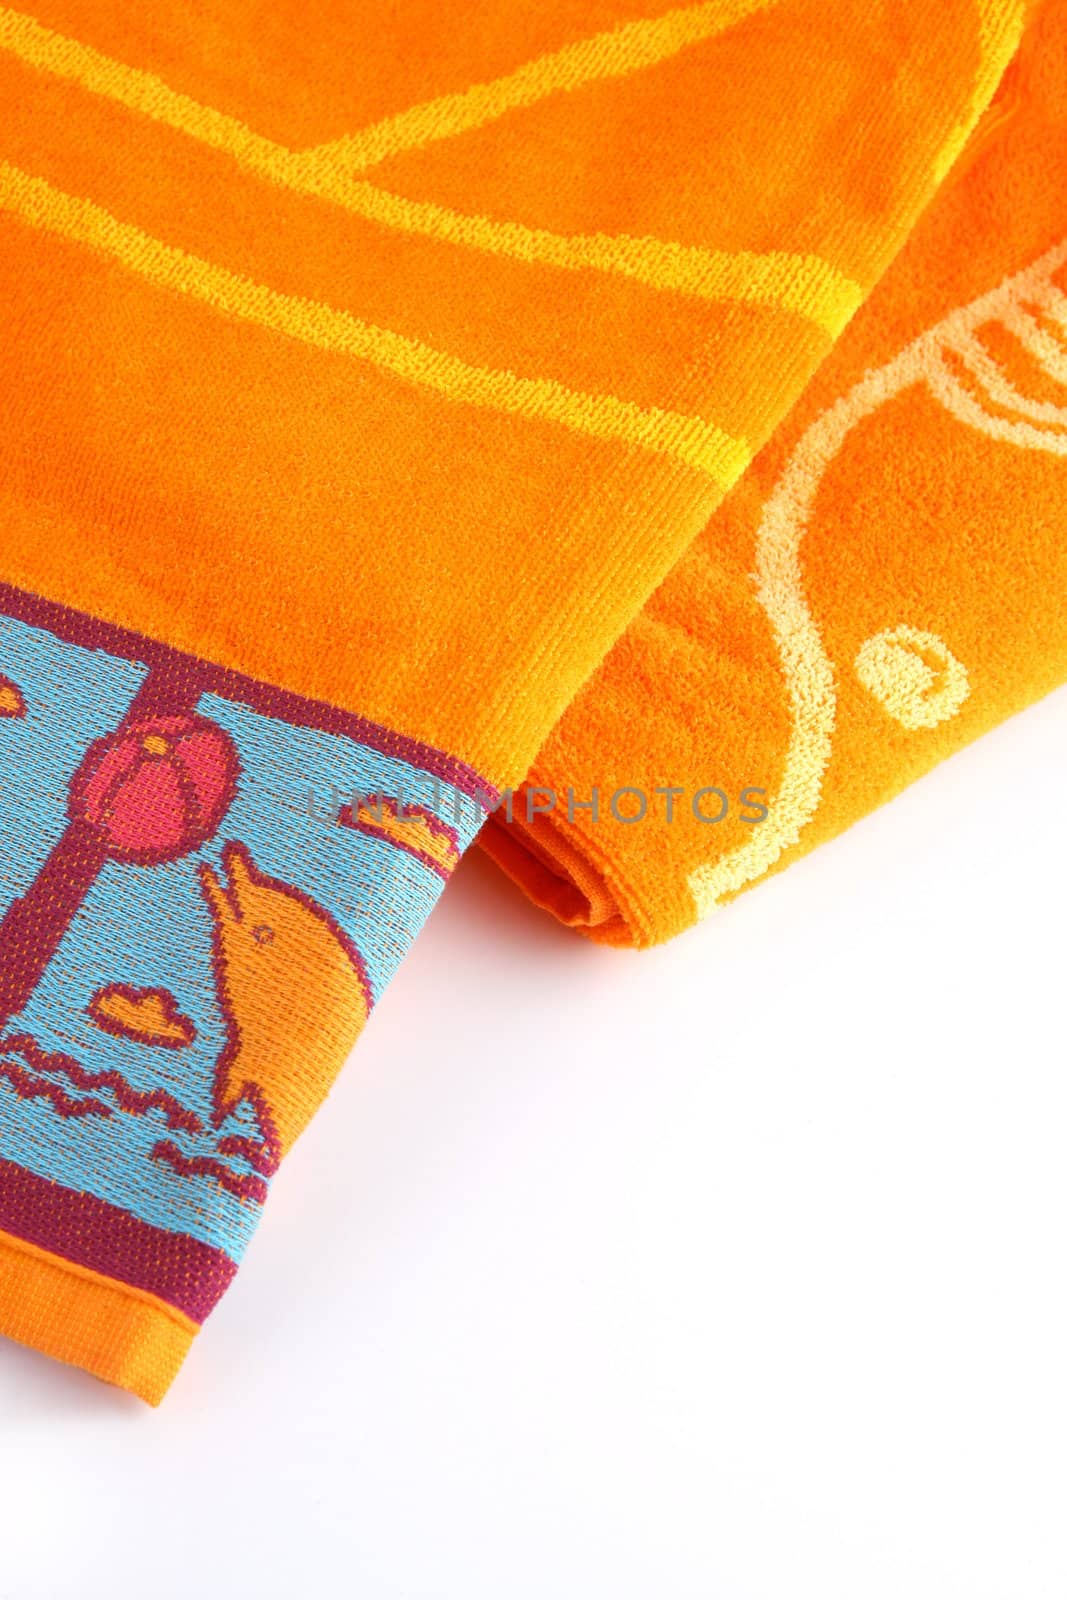 Orange beach towel by phovoir